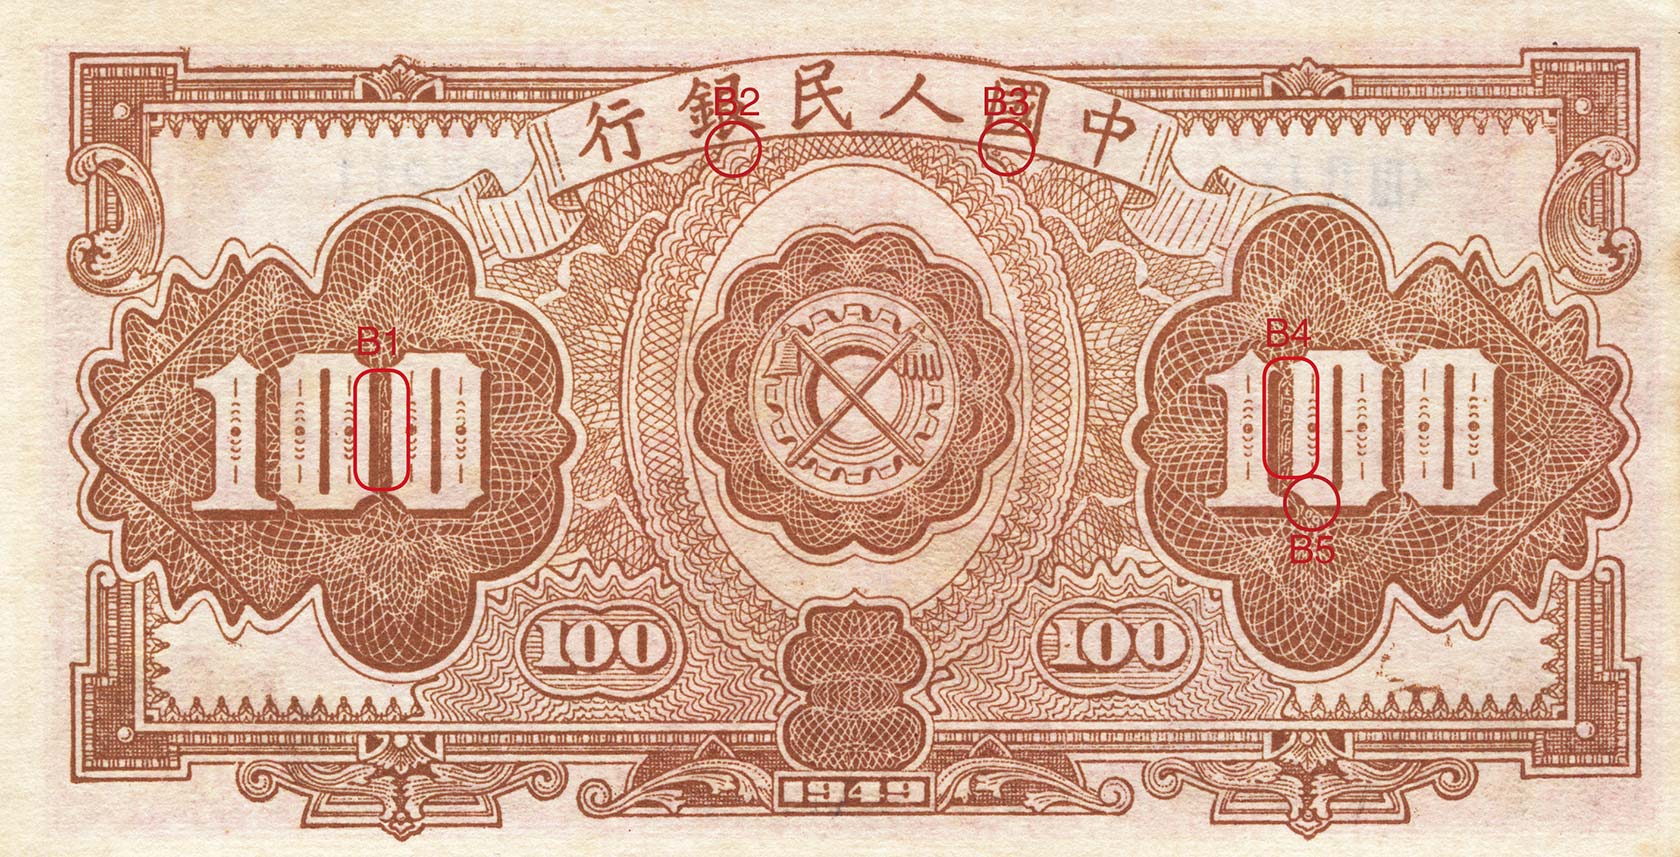 2020年版第五套人民币5元纸币来了！来看有哪些变化→ - 知乎